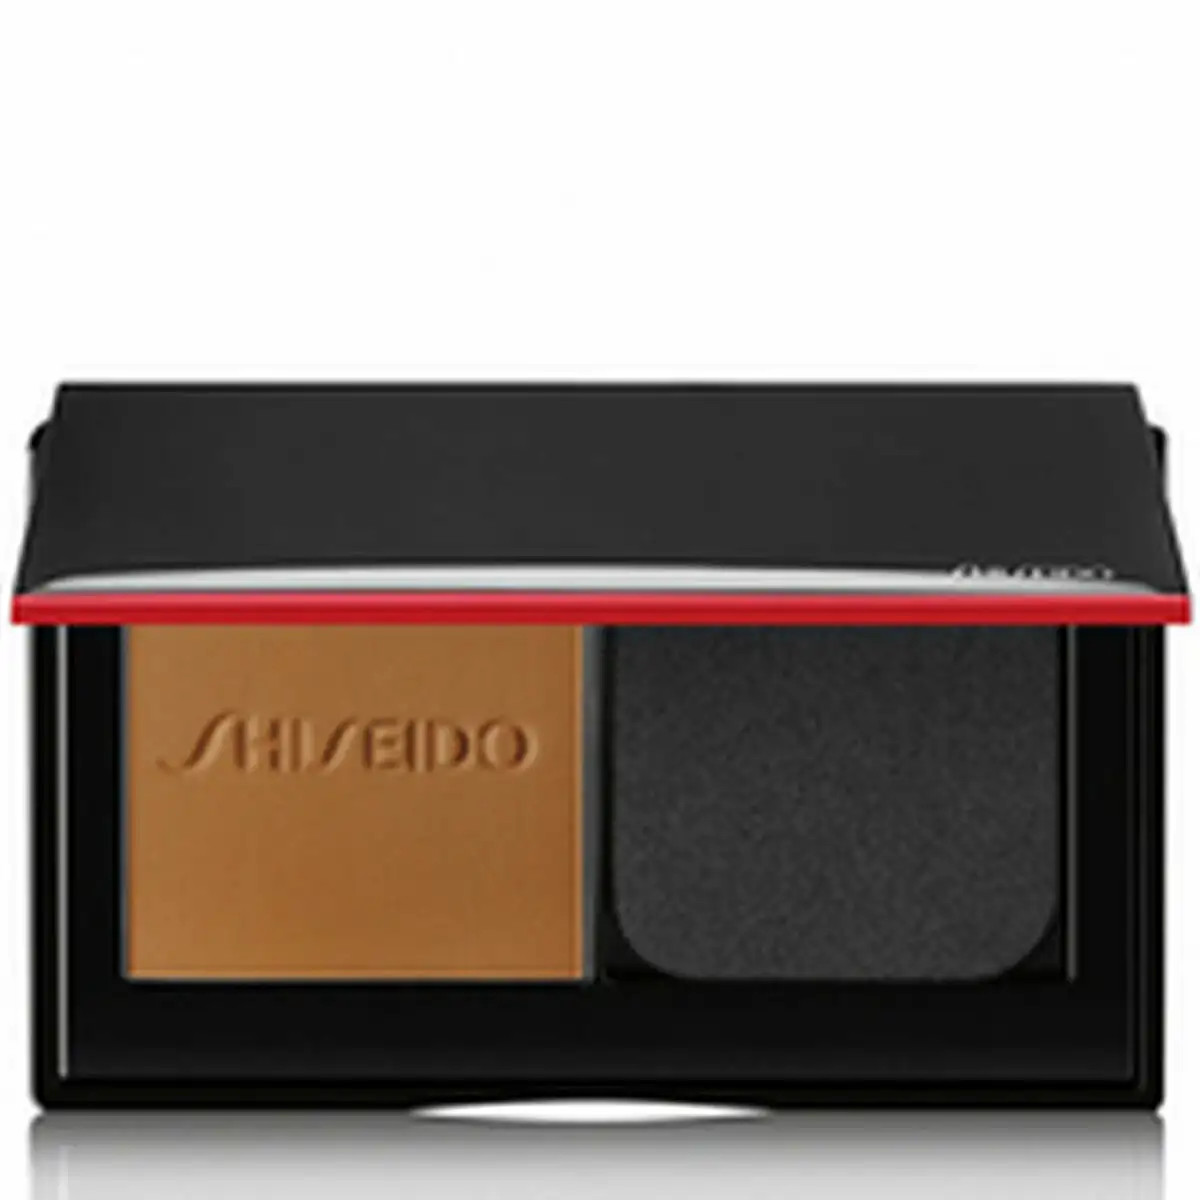 Base de maquillage en poudre shiseido 729238161252_6595. DIAYTAR SENEGAL - Là où la Diversité Rencontre la Qualité. Parcourez notre gamme complète et trouvez des produits qui incarnent la richesse et l'unicité du Sénégal.